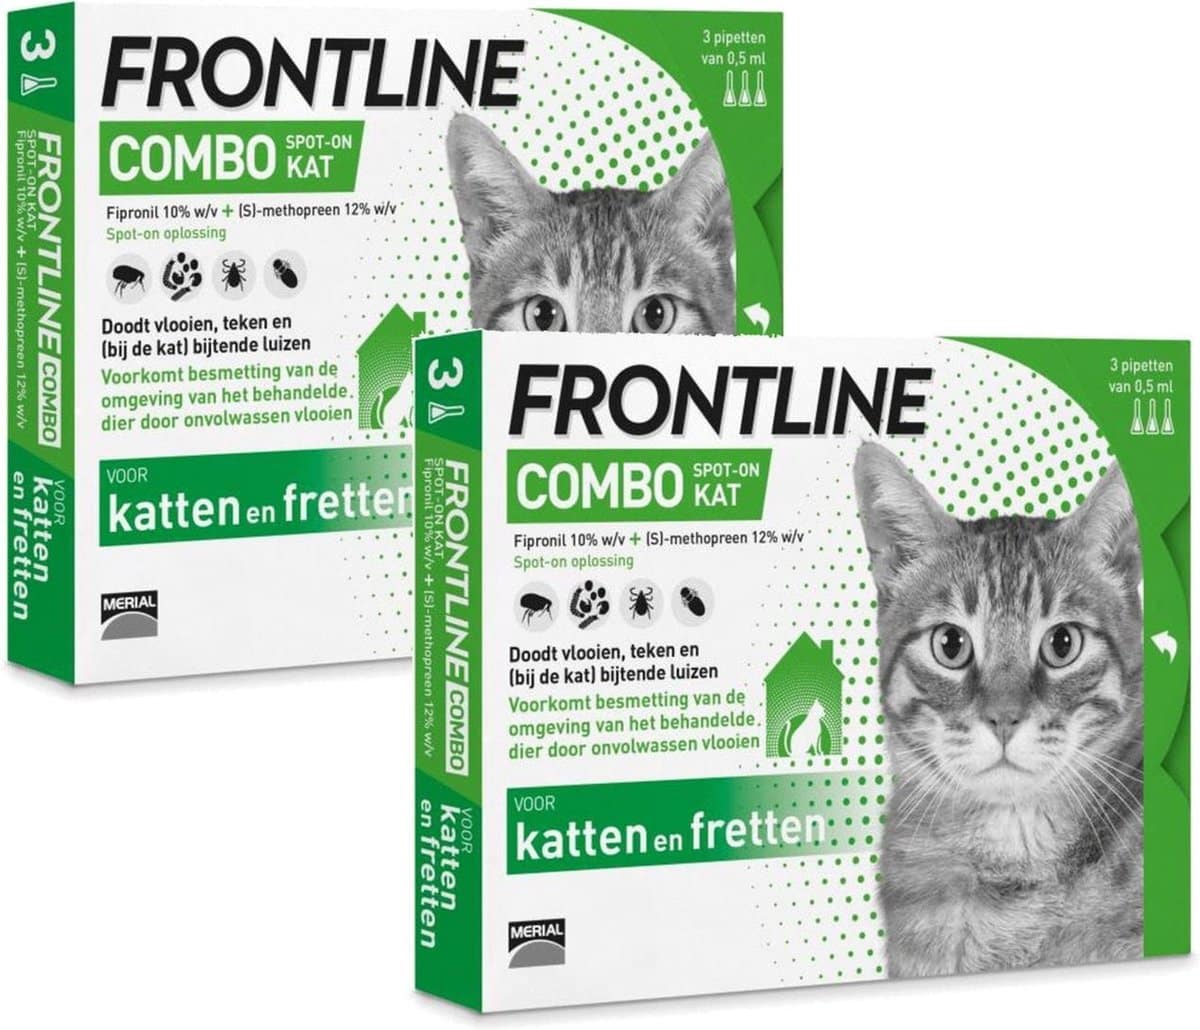 Frontline Combo Kat Veilig en betrouwbaar bestellen!